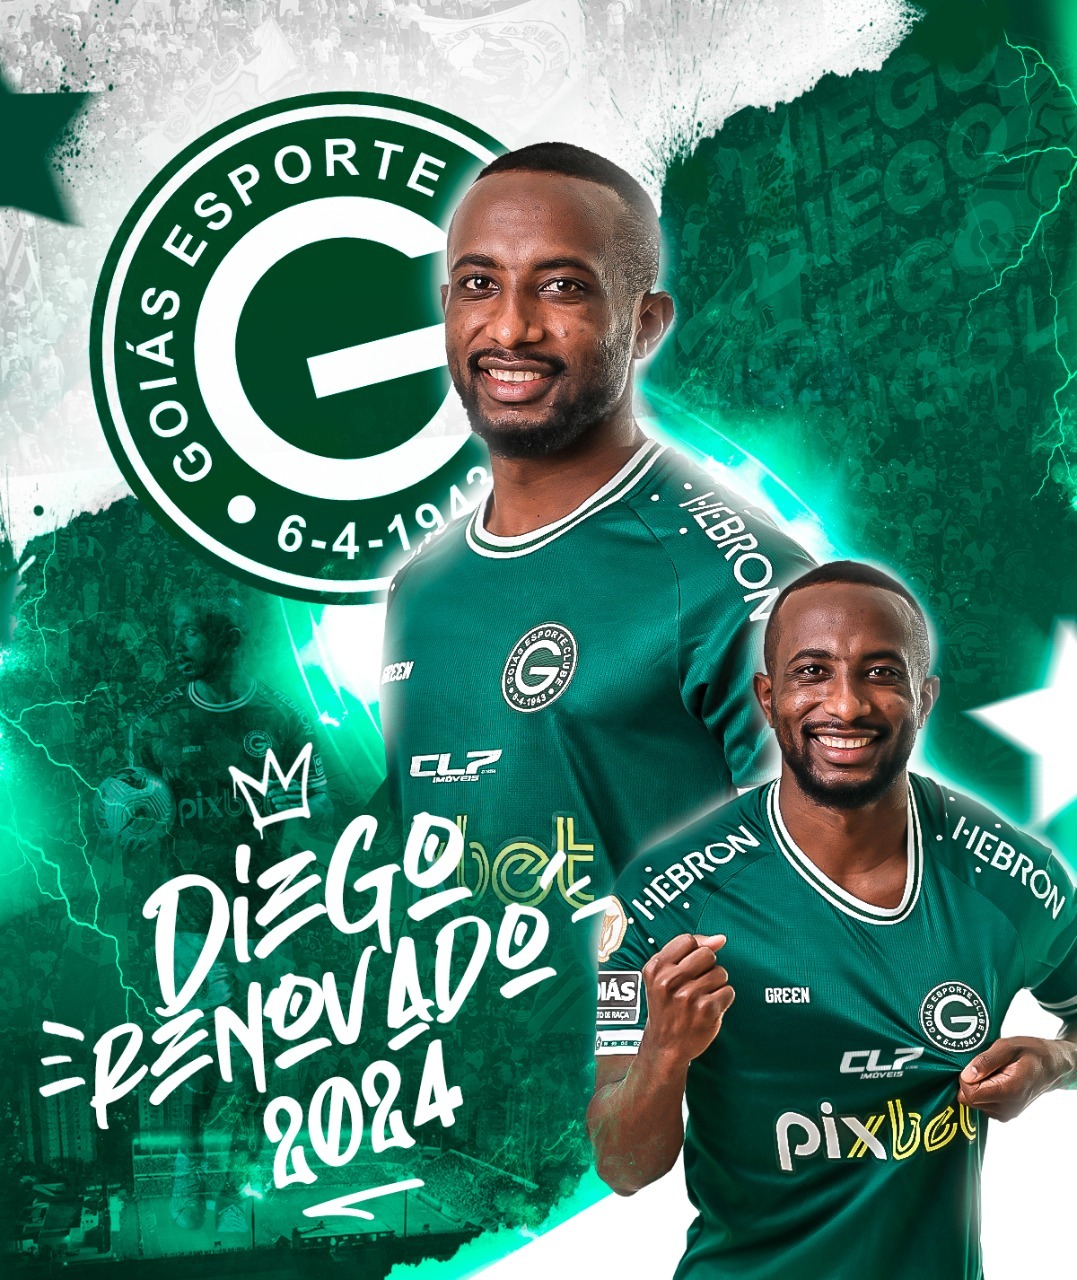  Diego renova contrato com o Goiás e celebra: “Estou muito feliz”